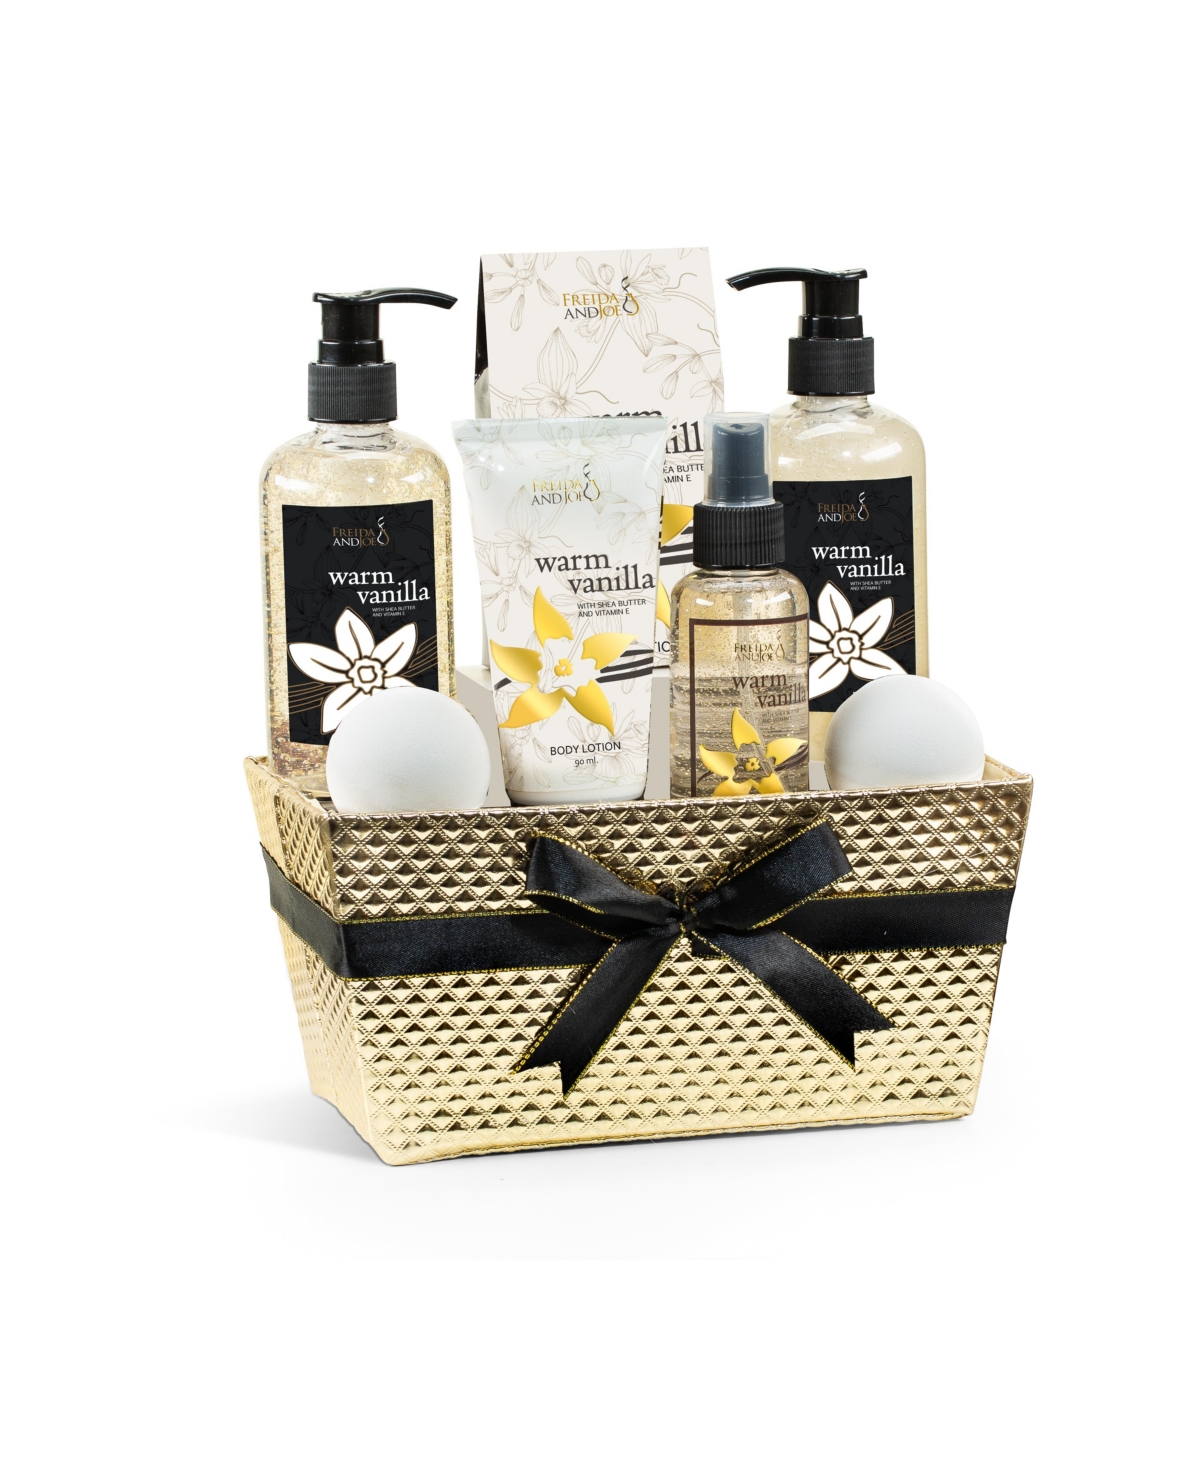 Warm Vanilla Fragrance Bath & Body Set in Gold Basket